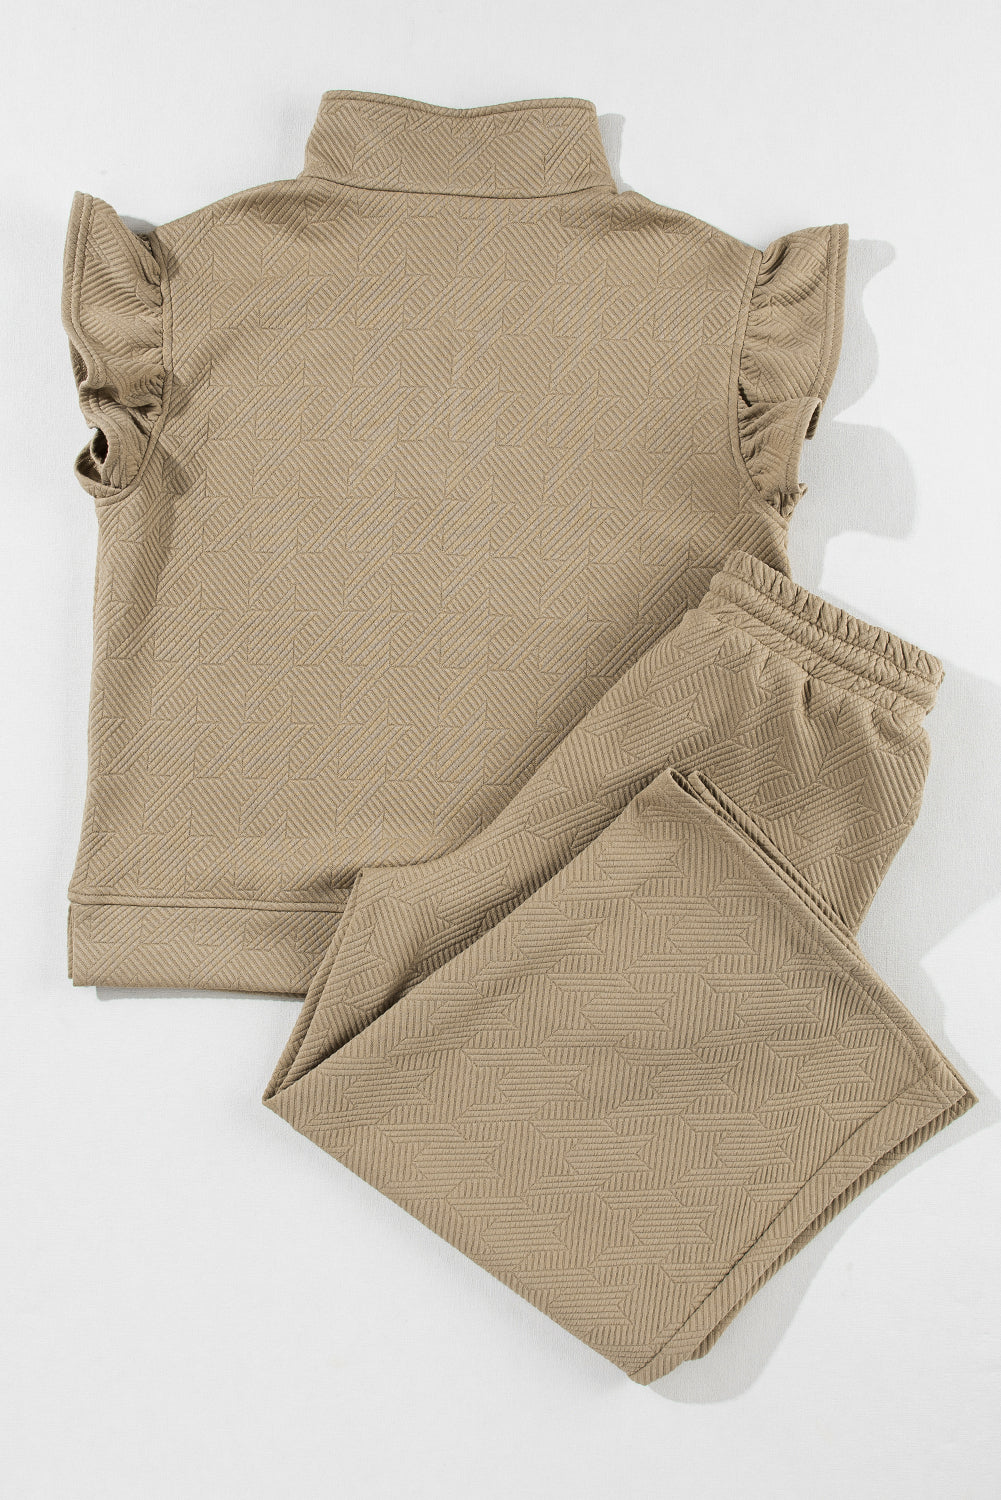 Conjunto de pantalones anchos con top con mangas acampanadas y textura de color caqui pálido